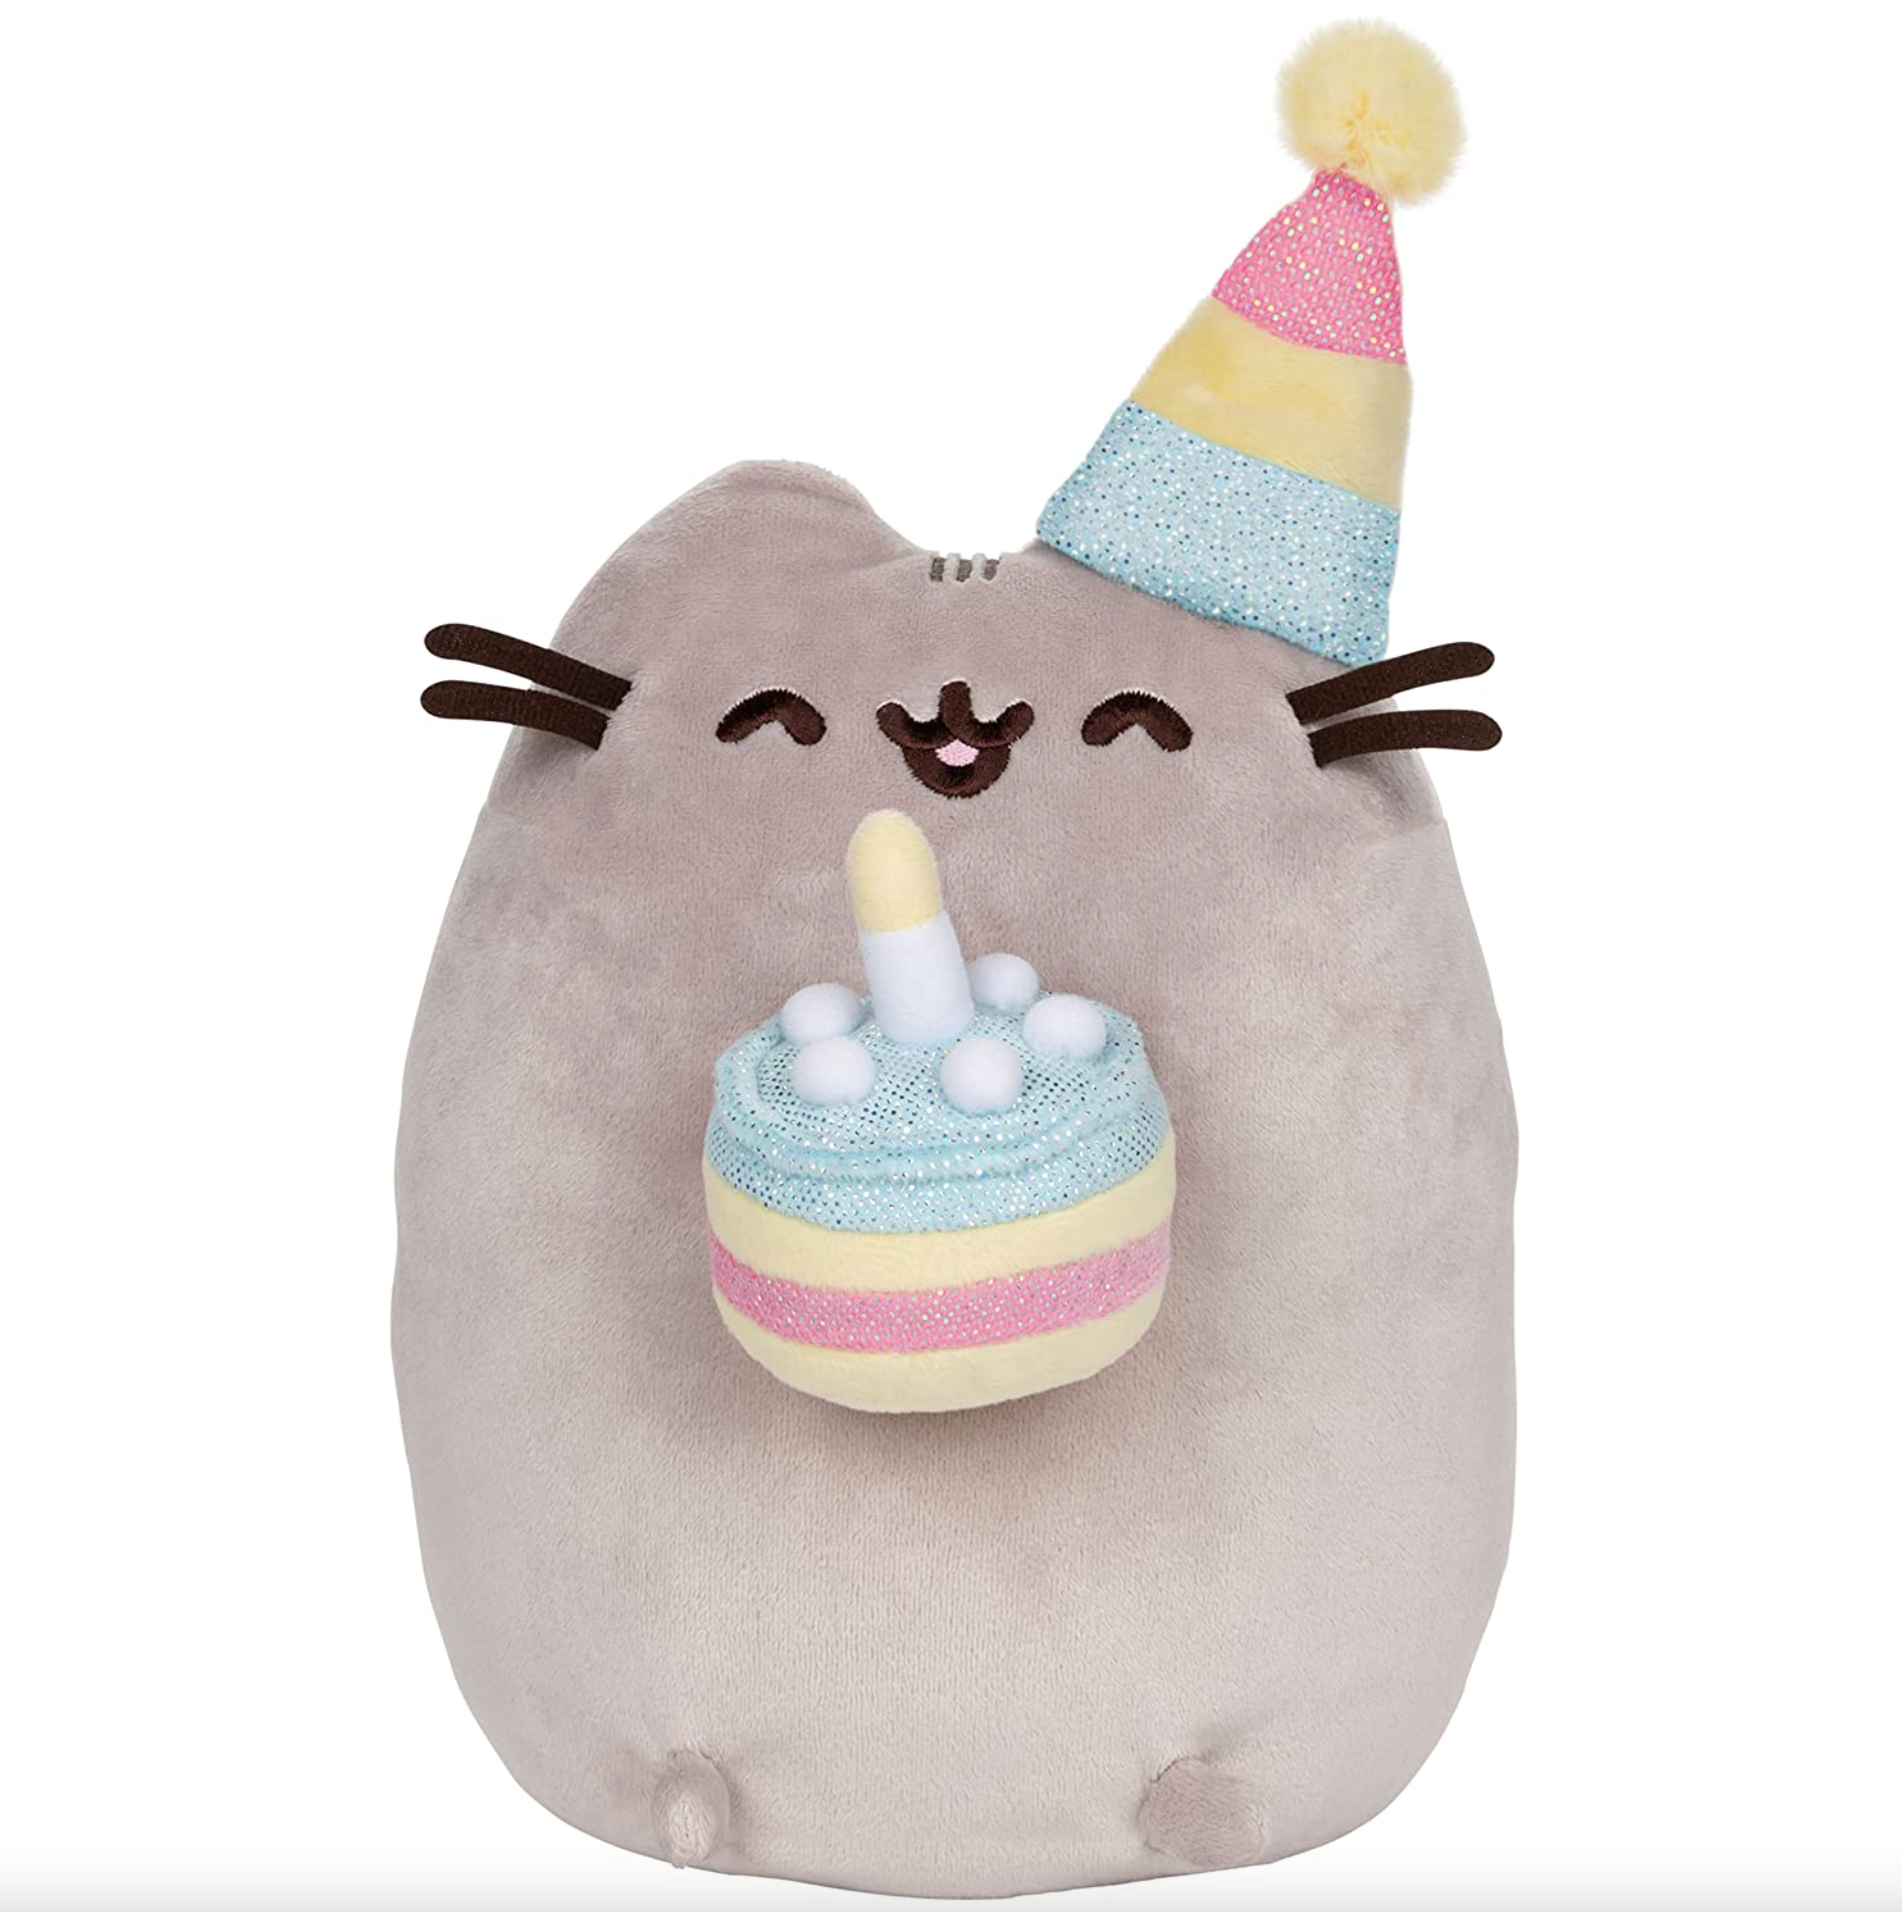 GUND Pusheen Birthday Cake Plush Stuffed Animal Cat, 9.5"